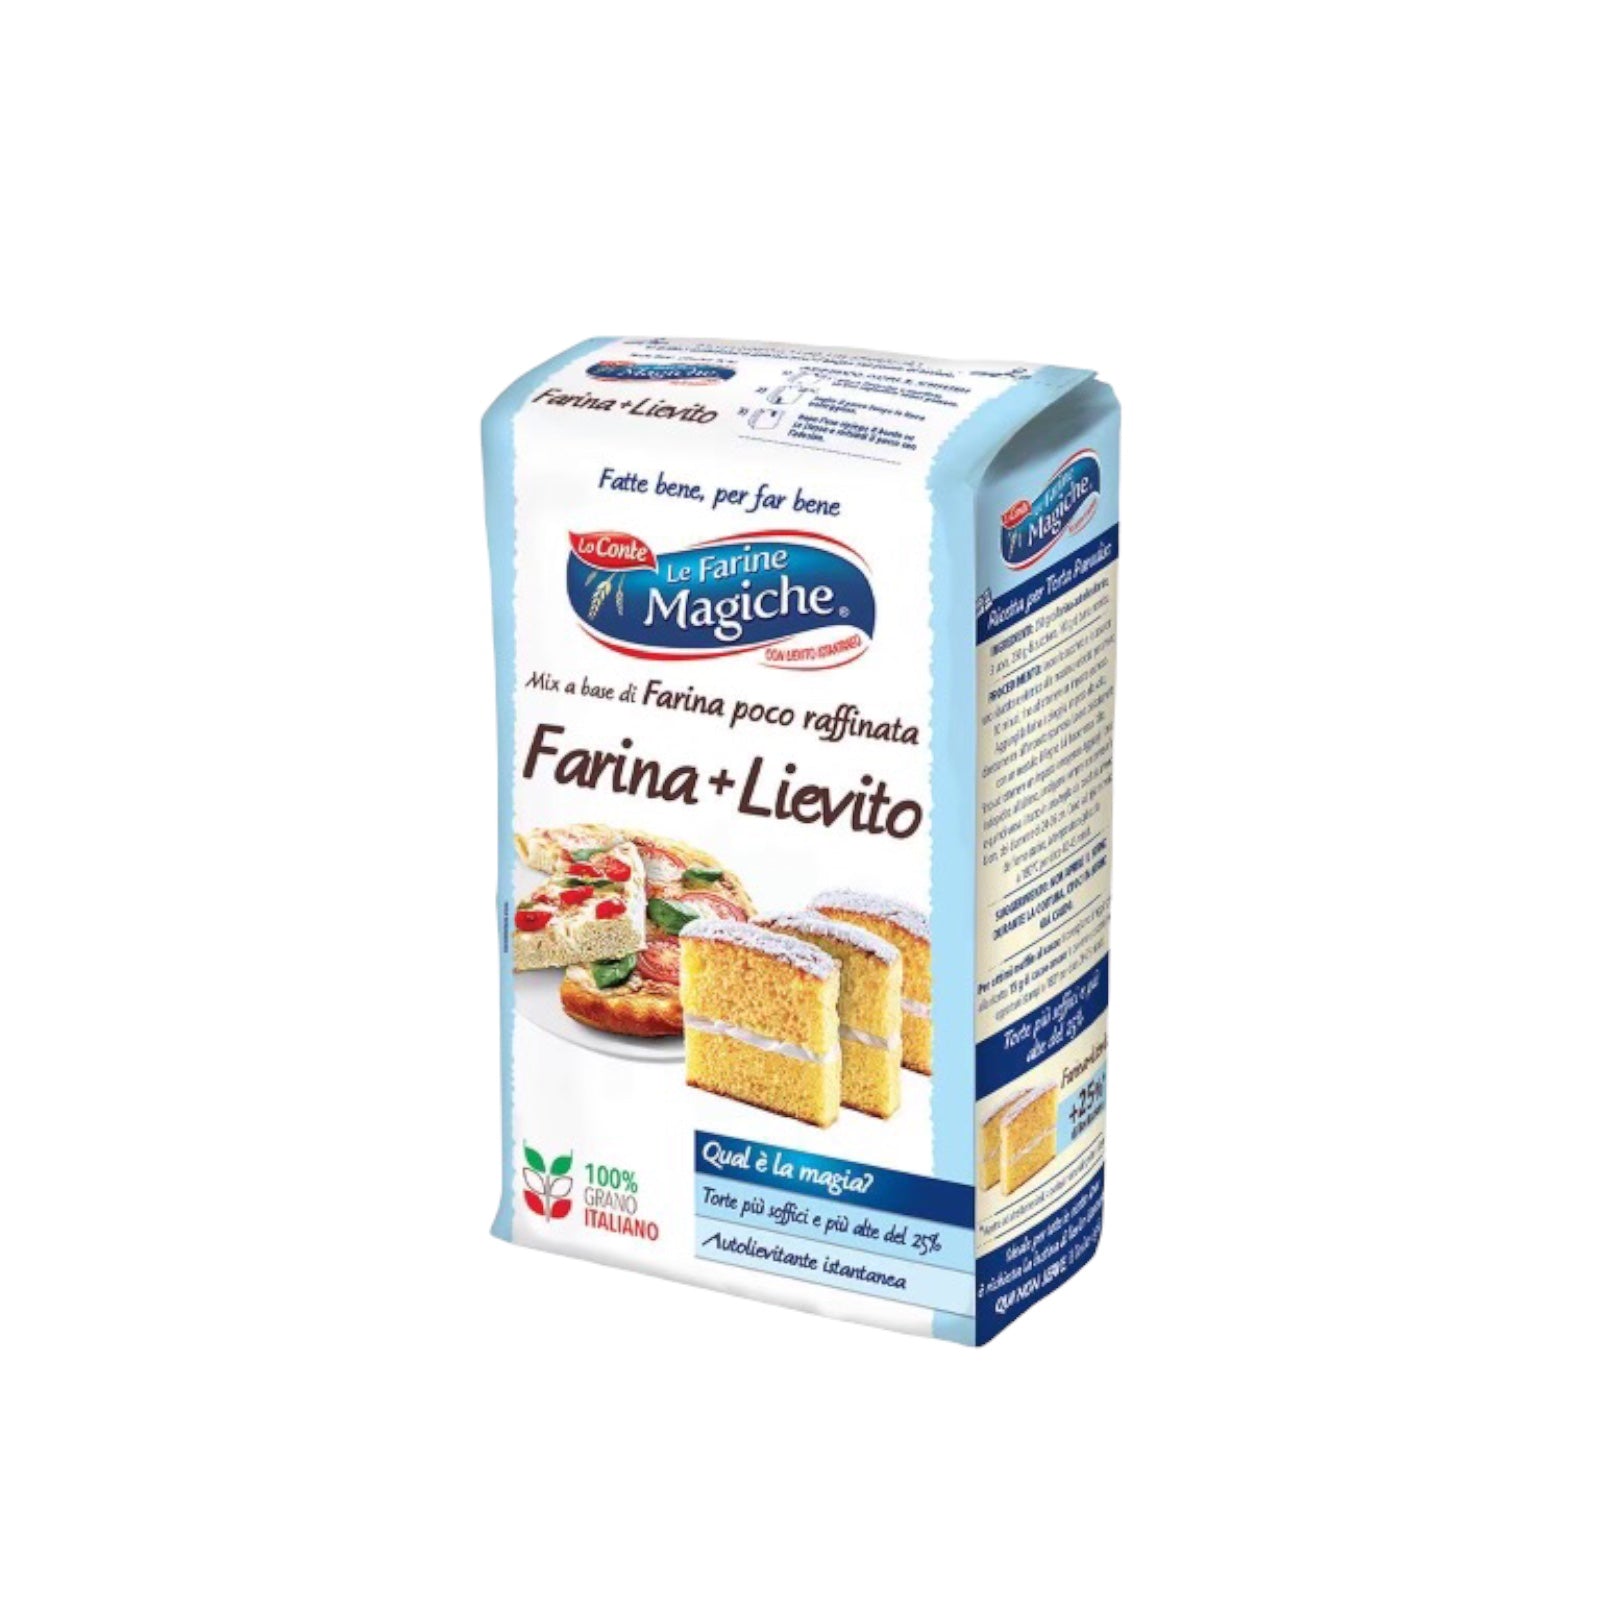 Le Farine Magiche Flour + Yeast 2.2lb